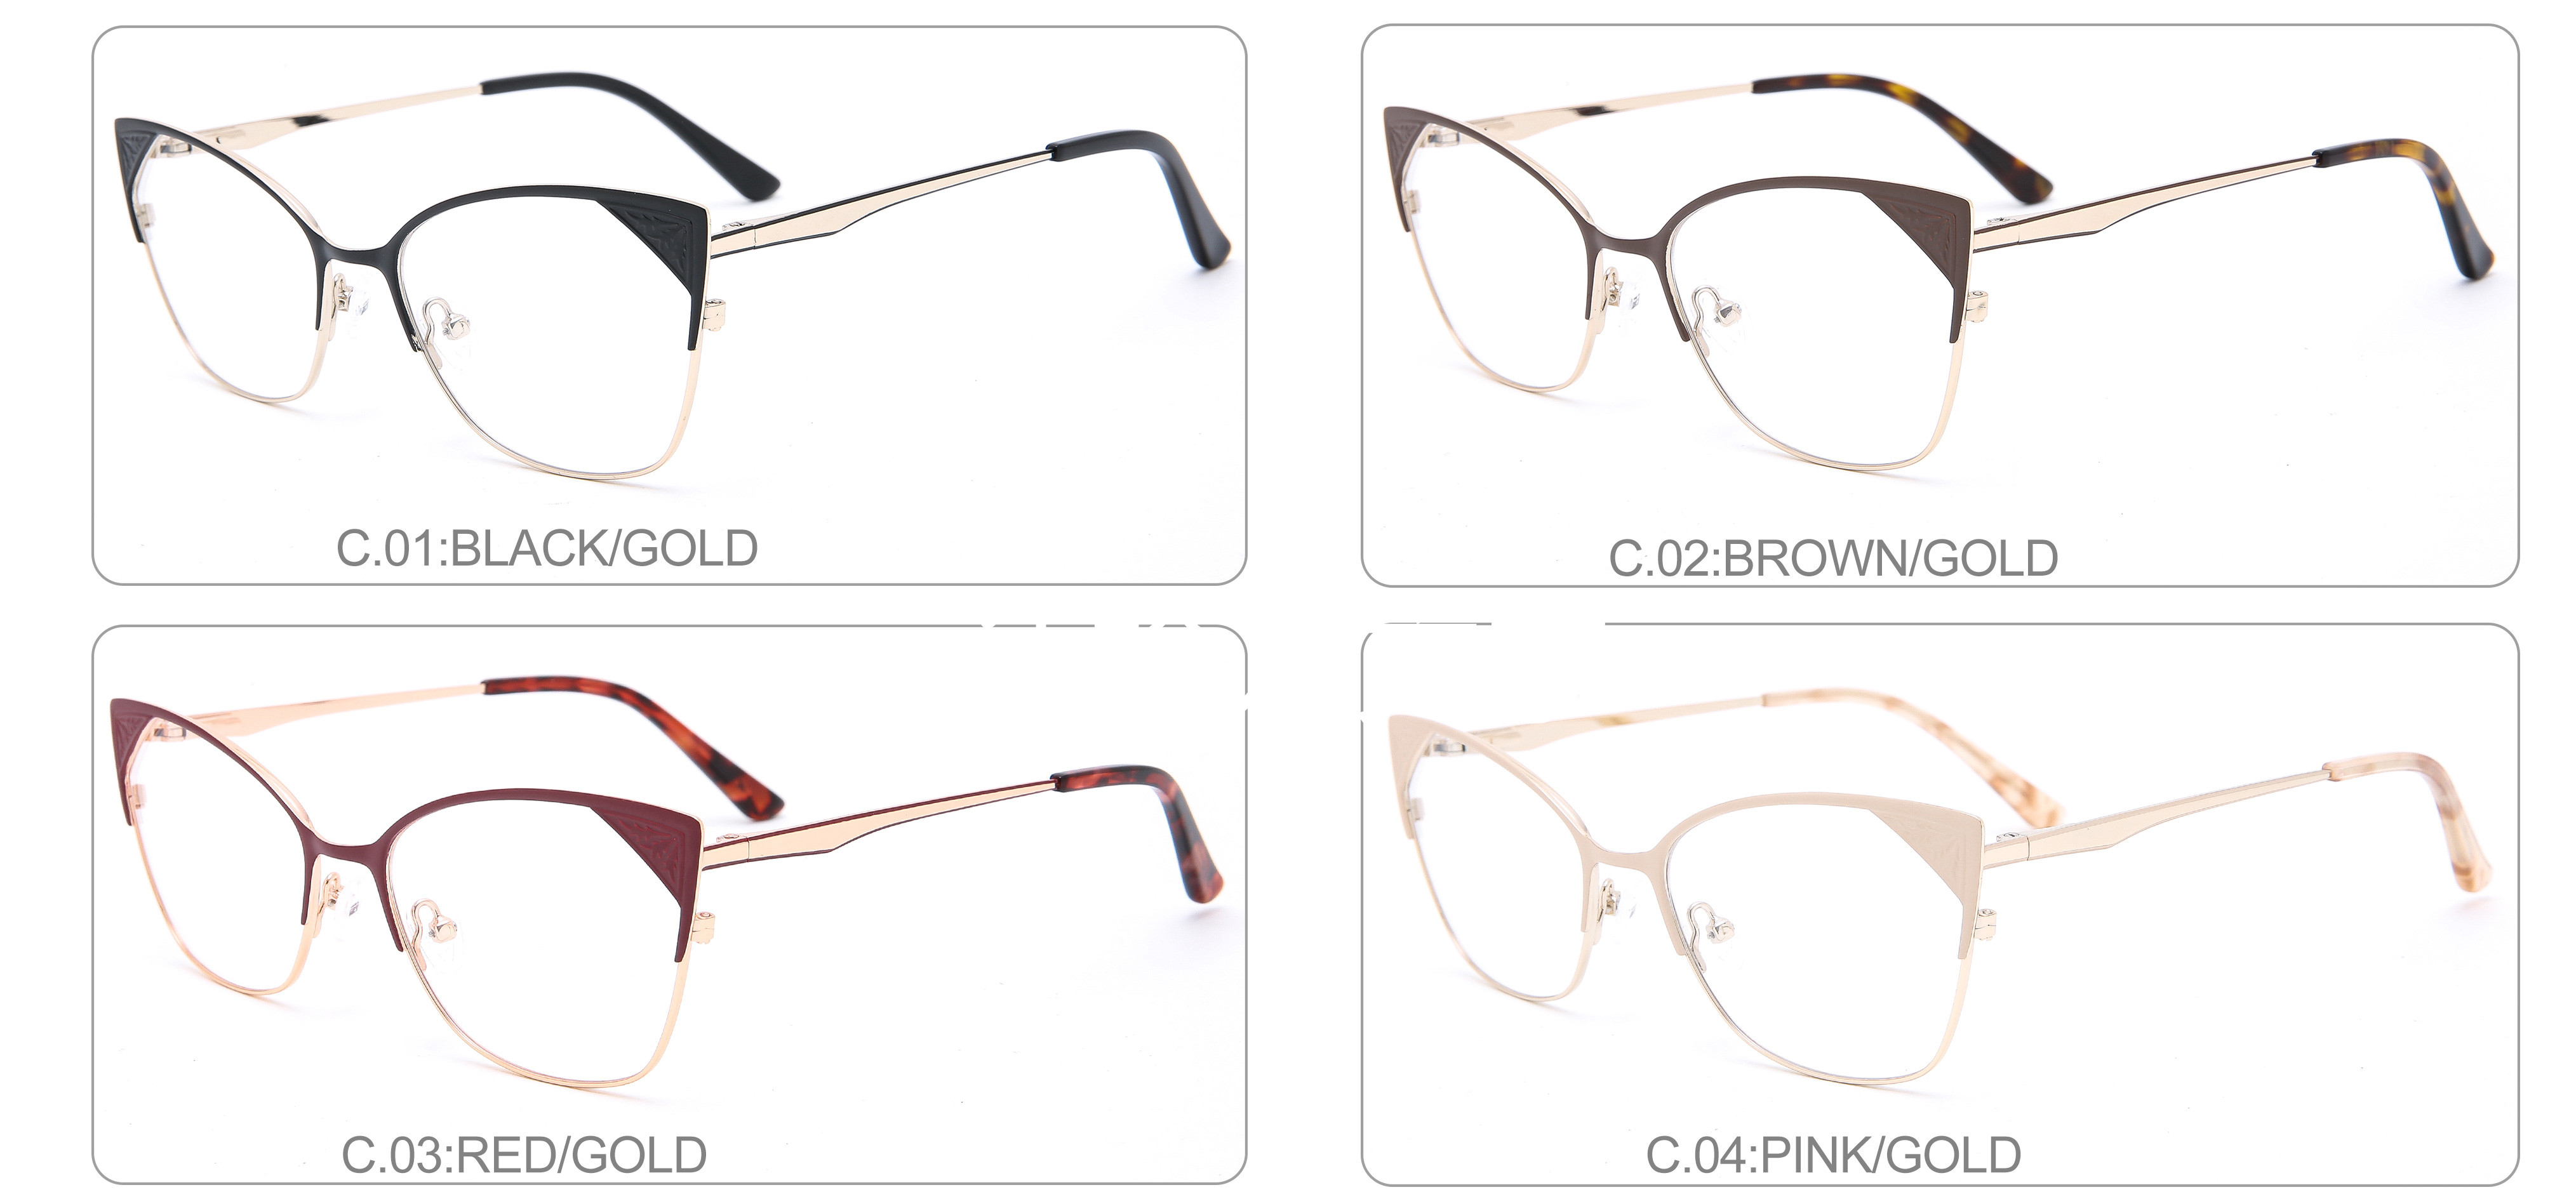 High Quality Optical Eyewear Metal Man Eyeglasses Frame